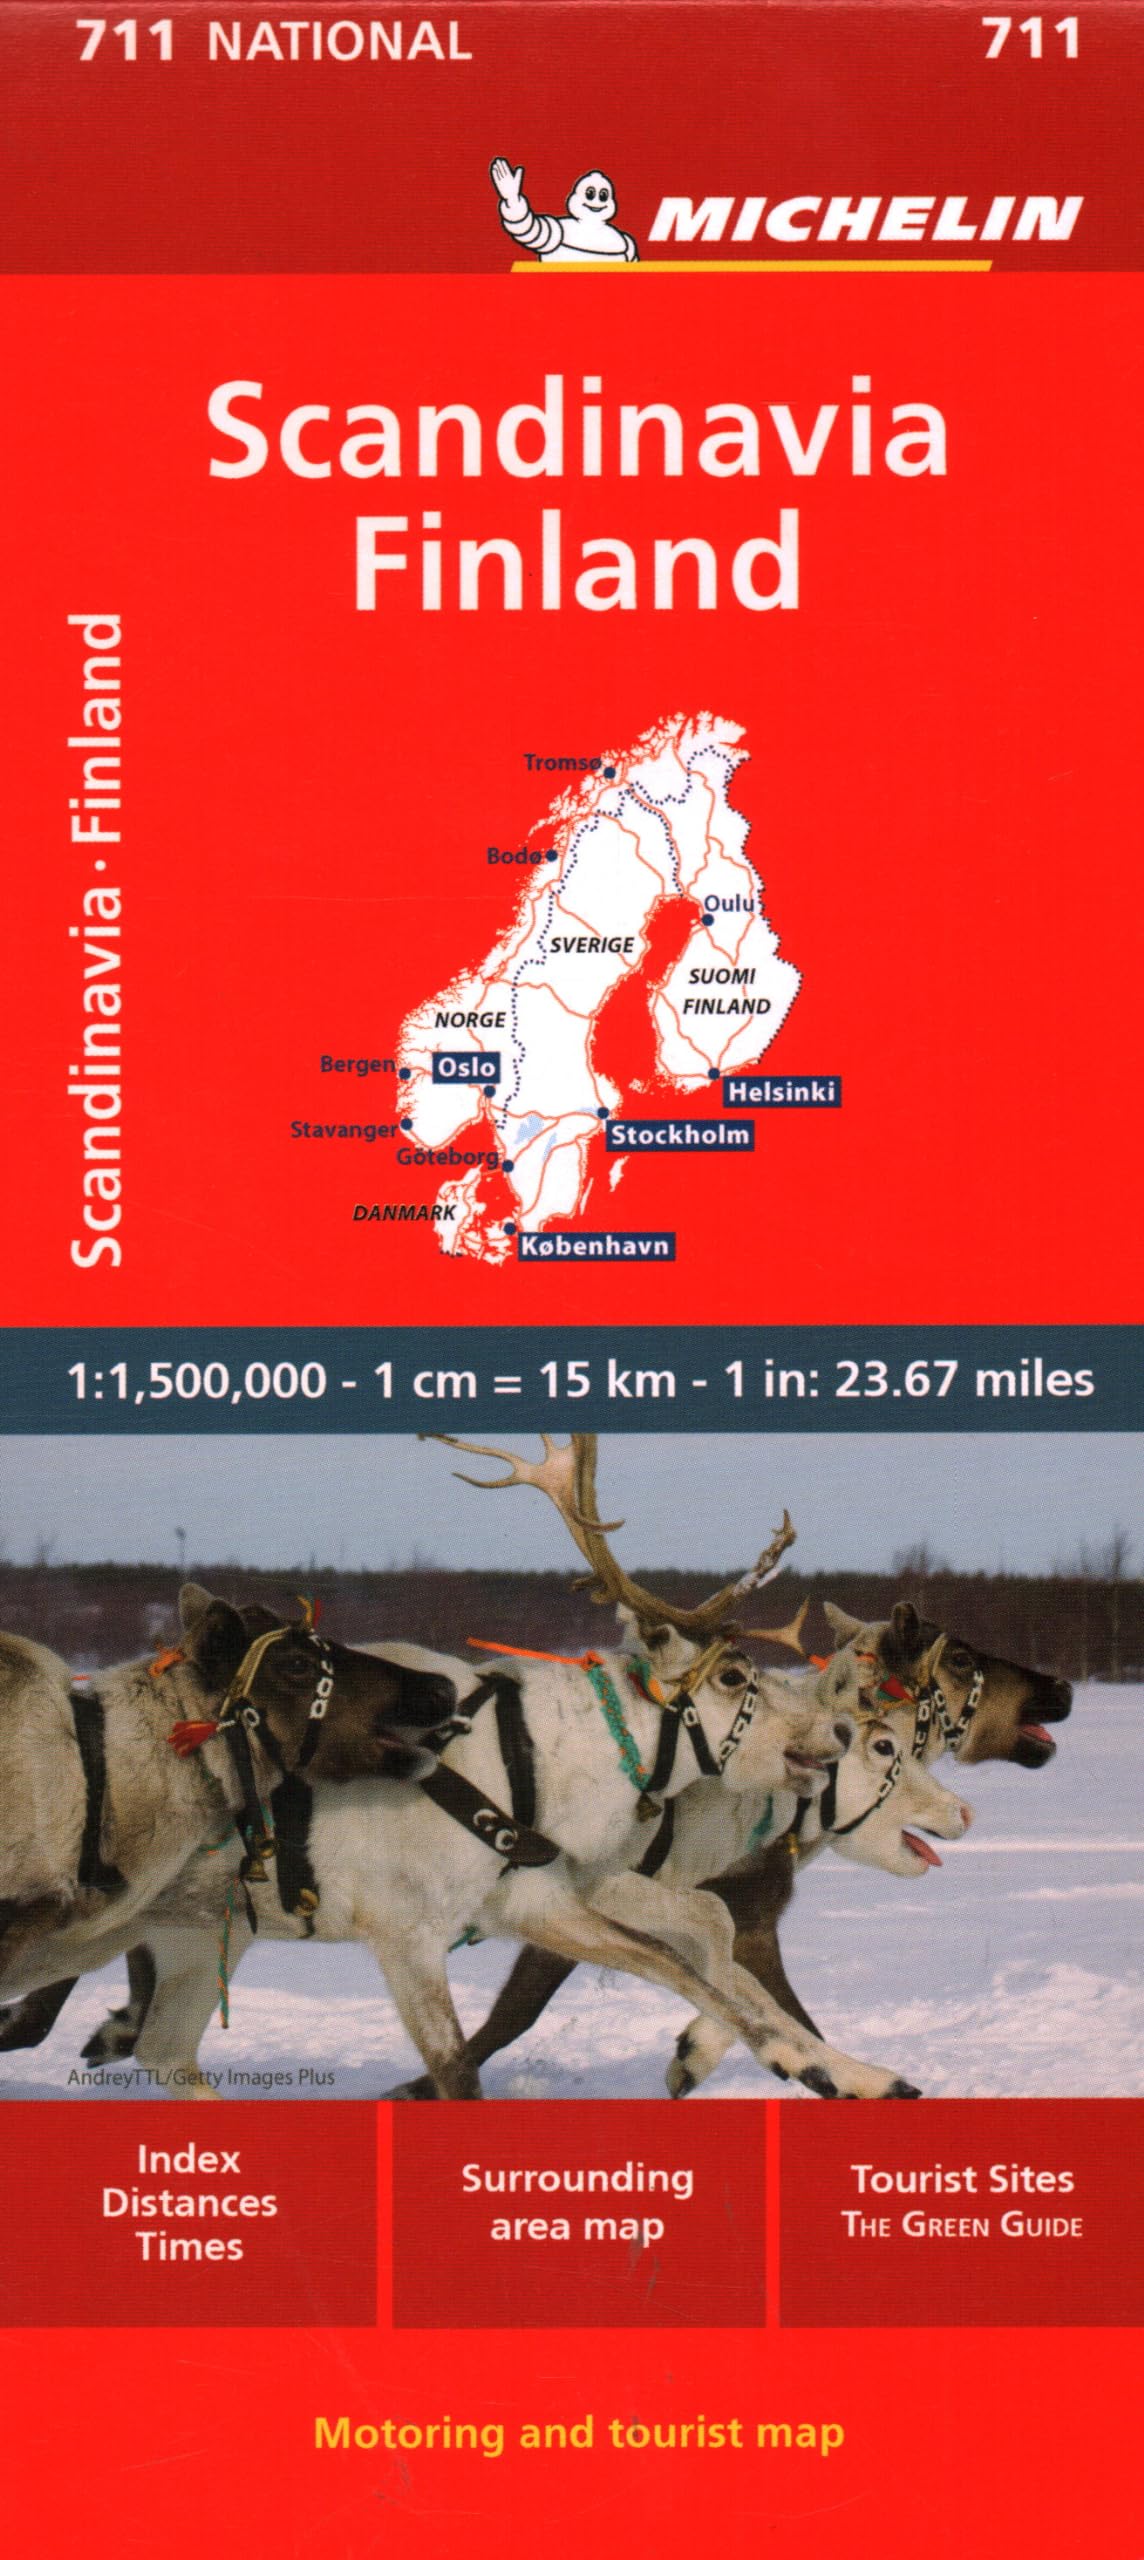 מפה MI סקנדינביה ופינלנד 711